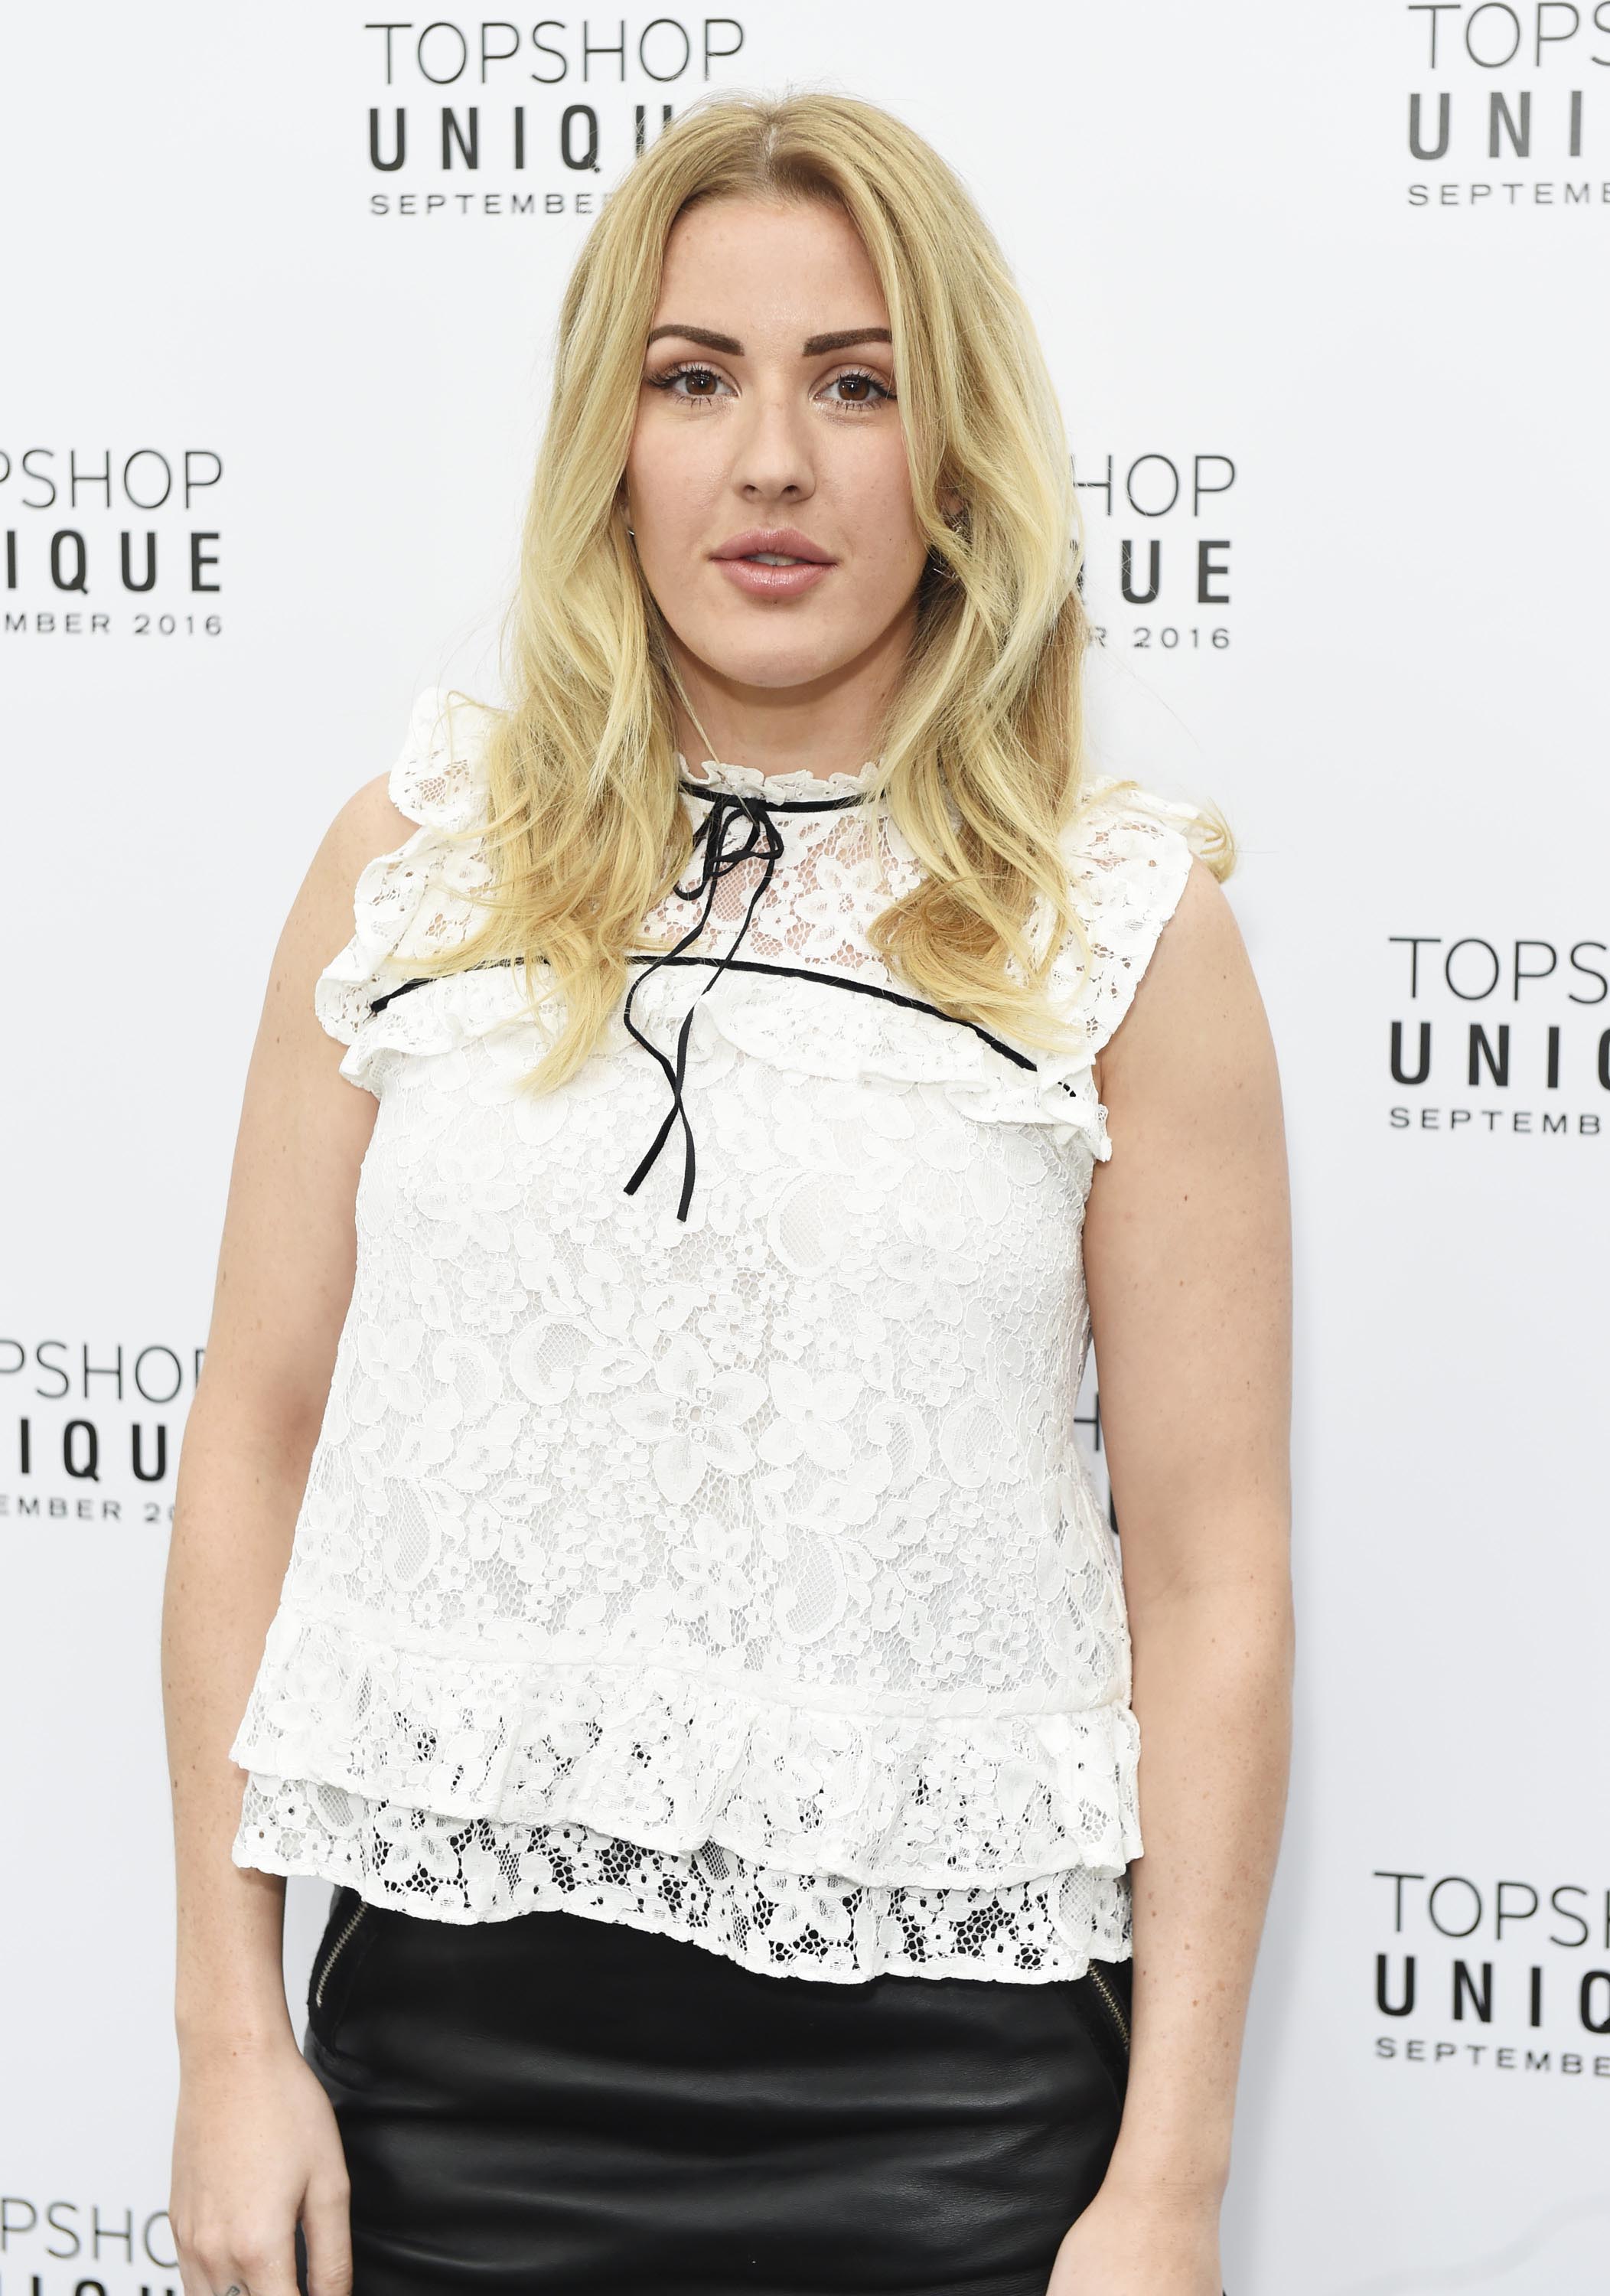 Ellie Goulding attends the Topshop Unique show